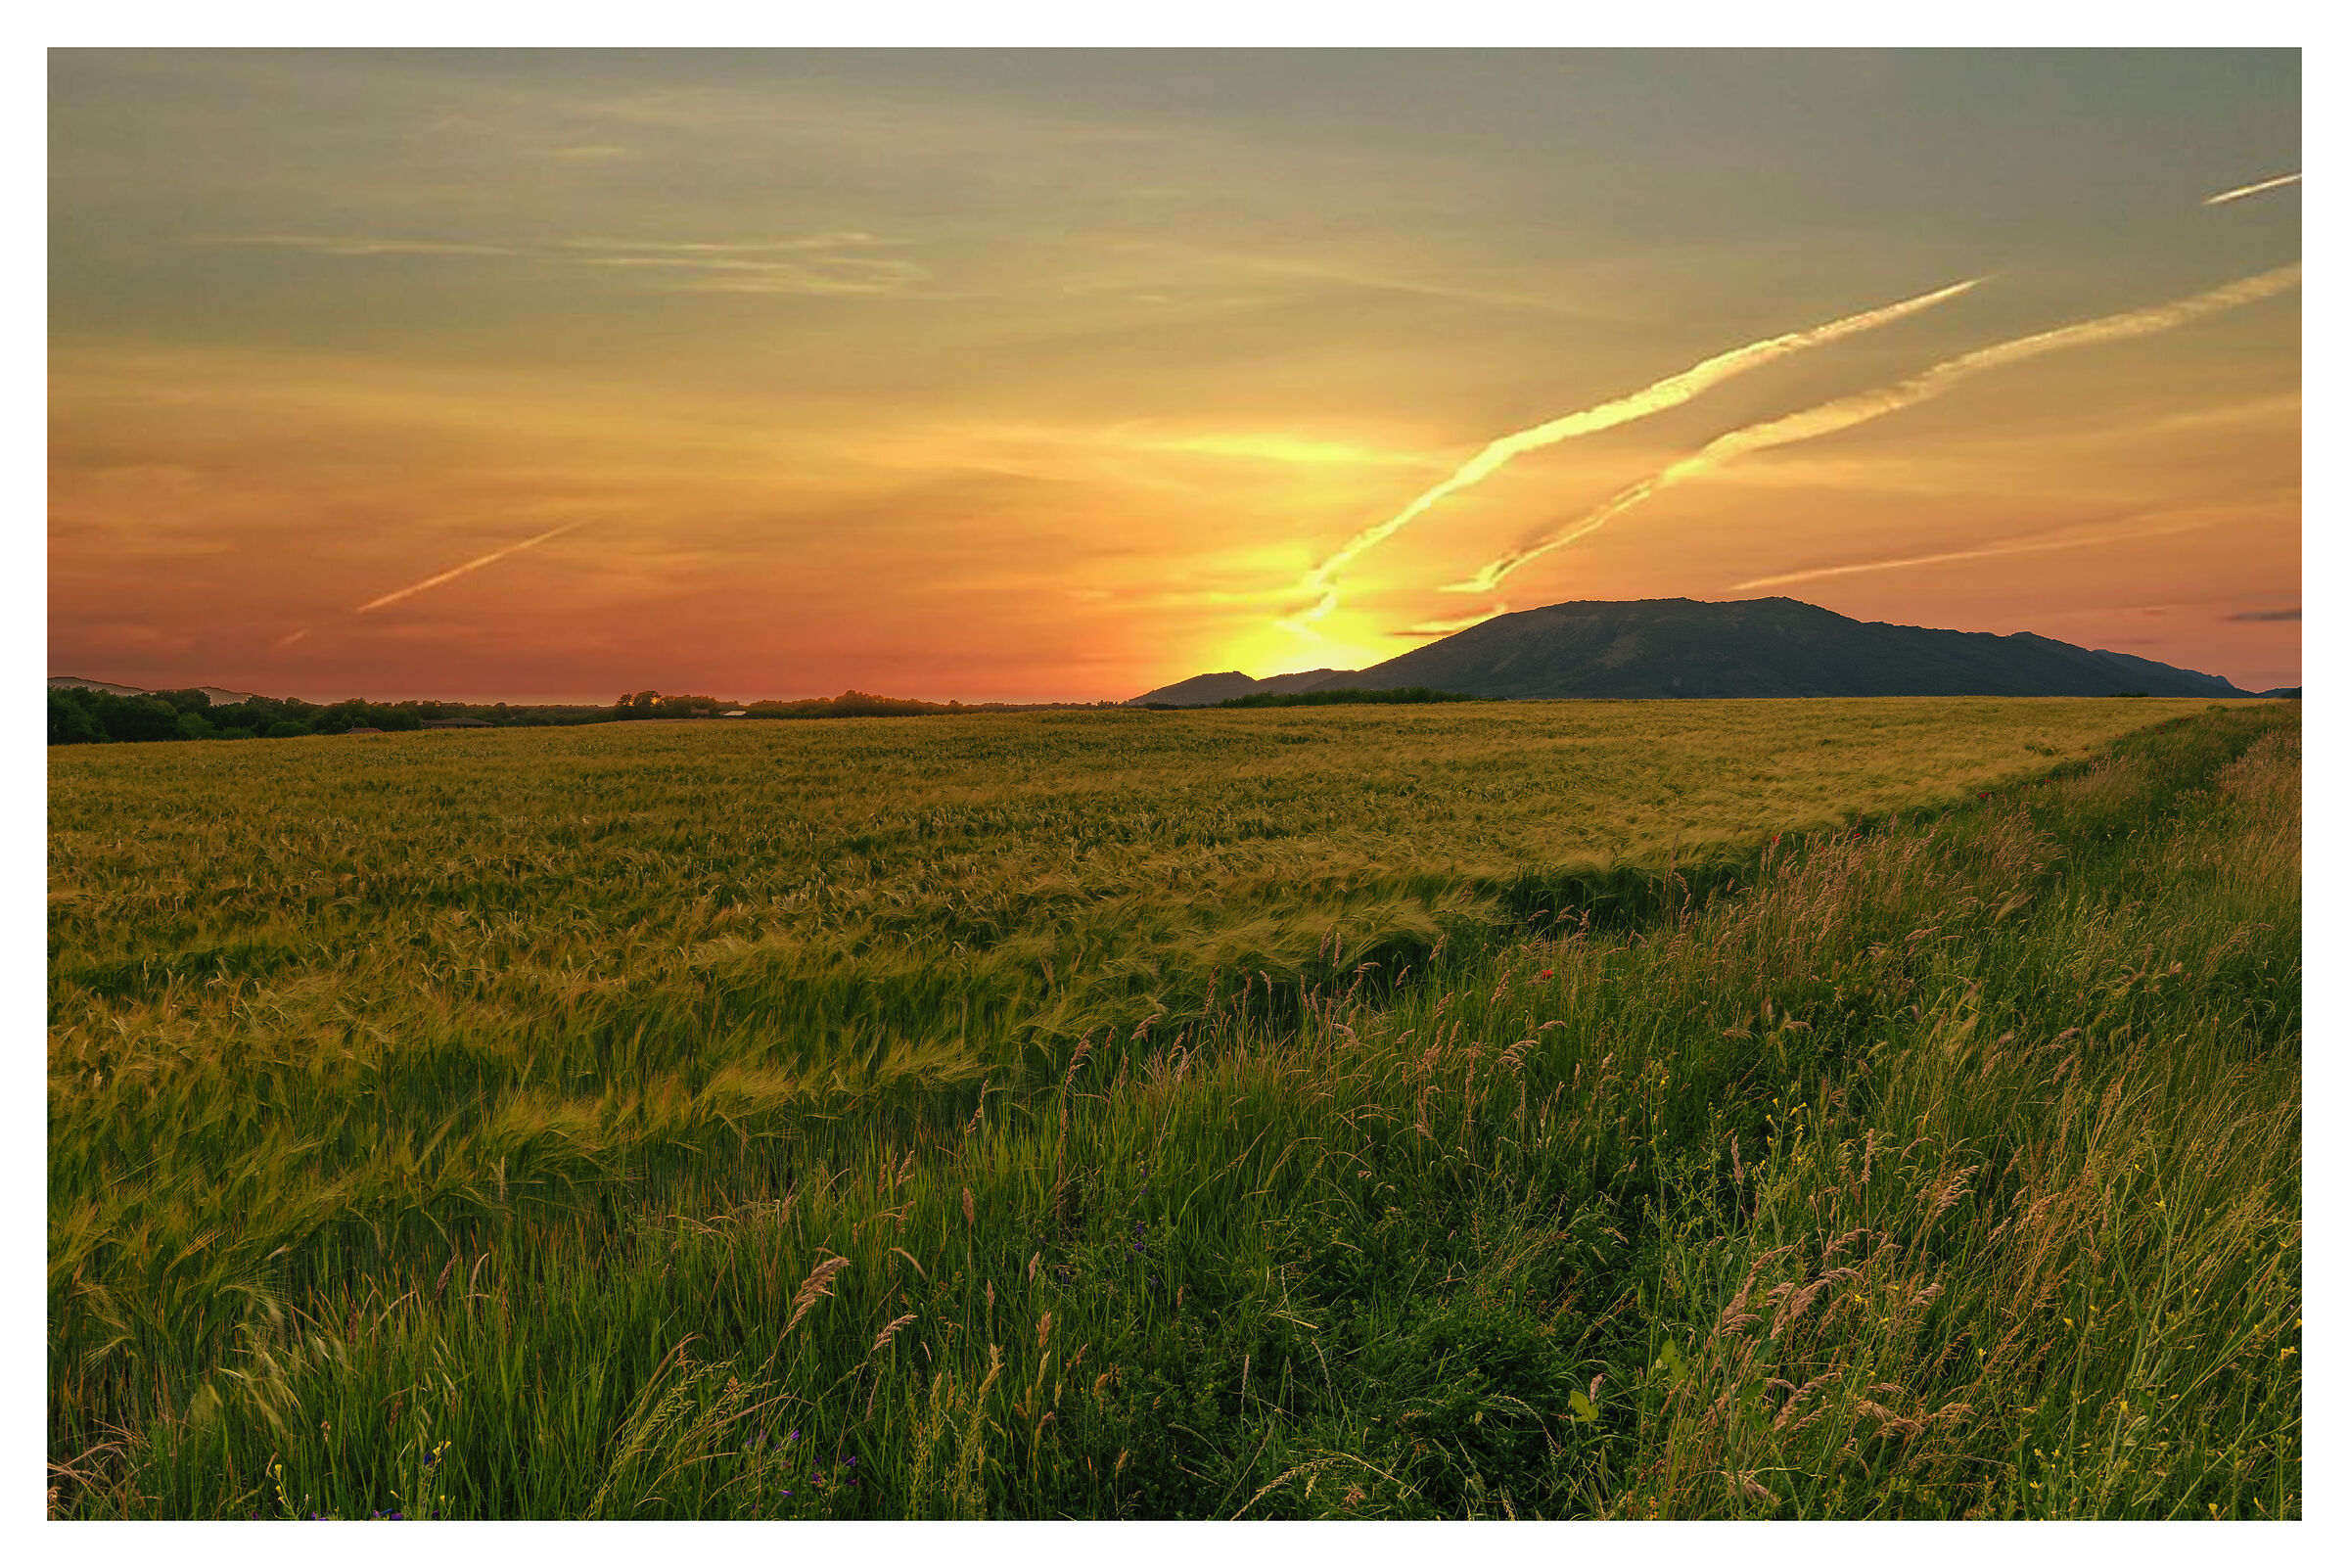 Barley field at sunset...